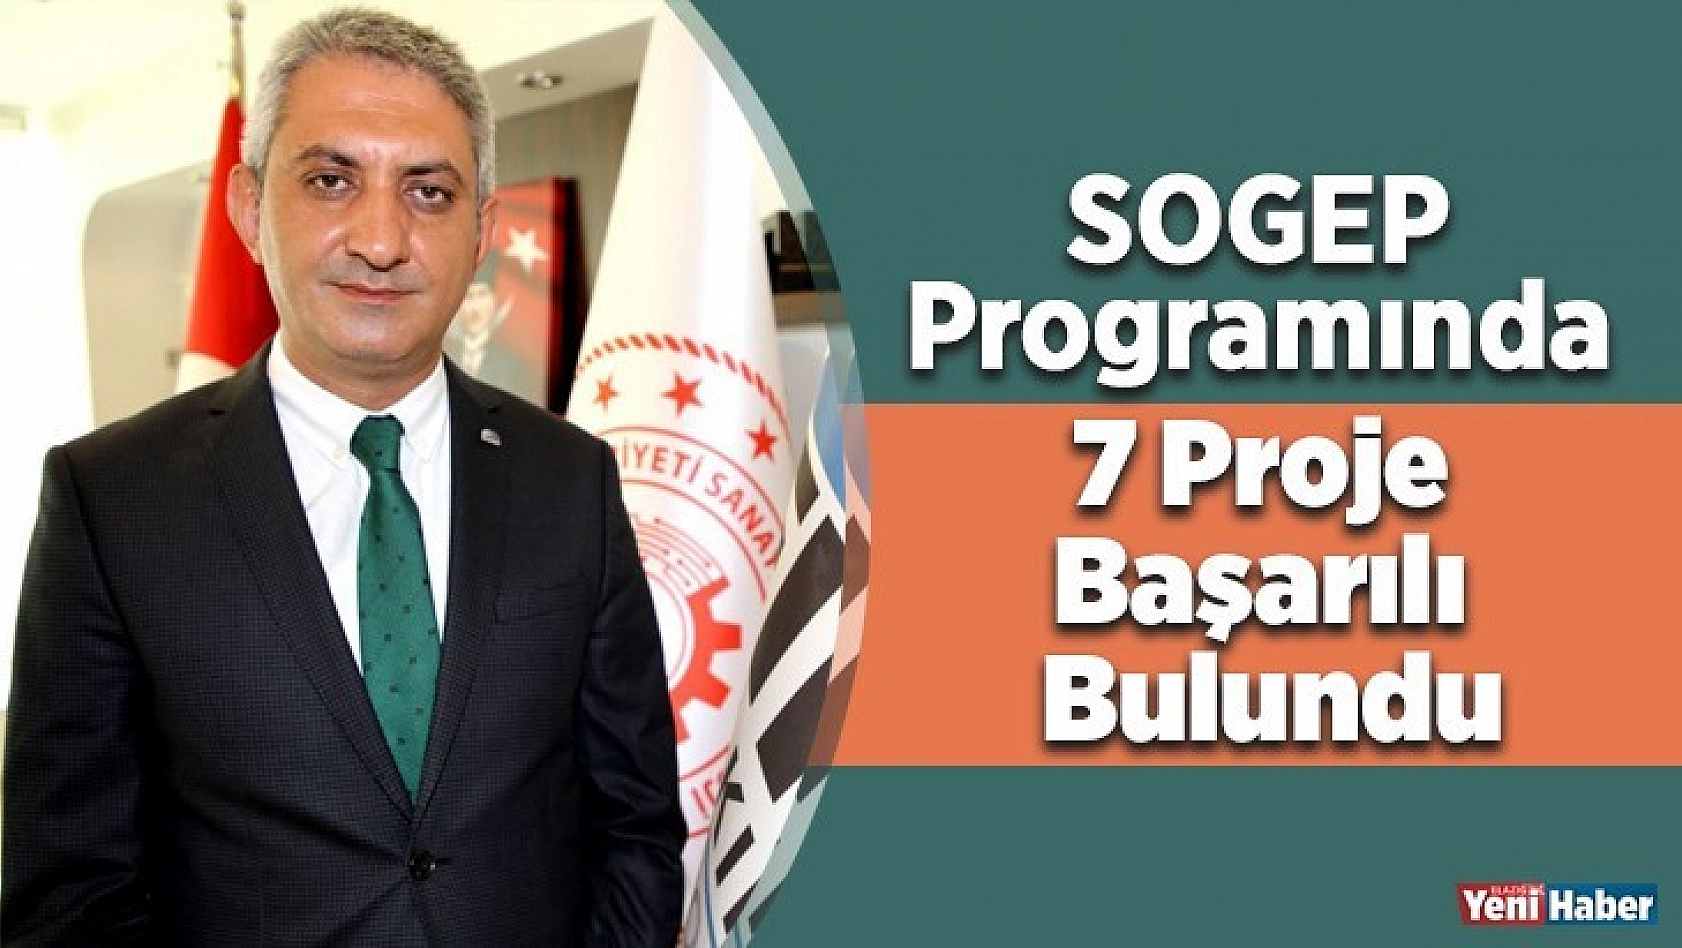 SOGEP Programında 7 Proje Başarılı Bulundu